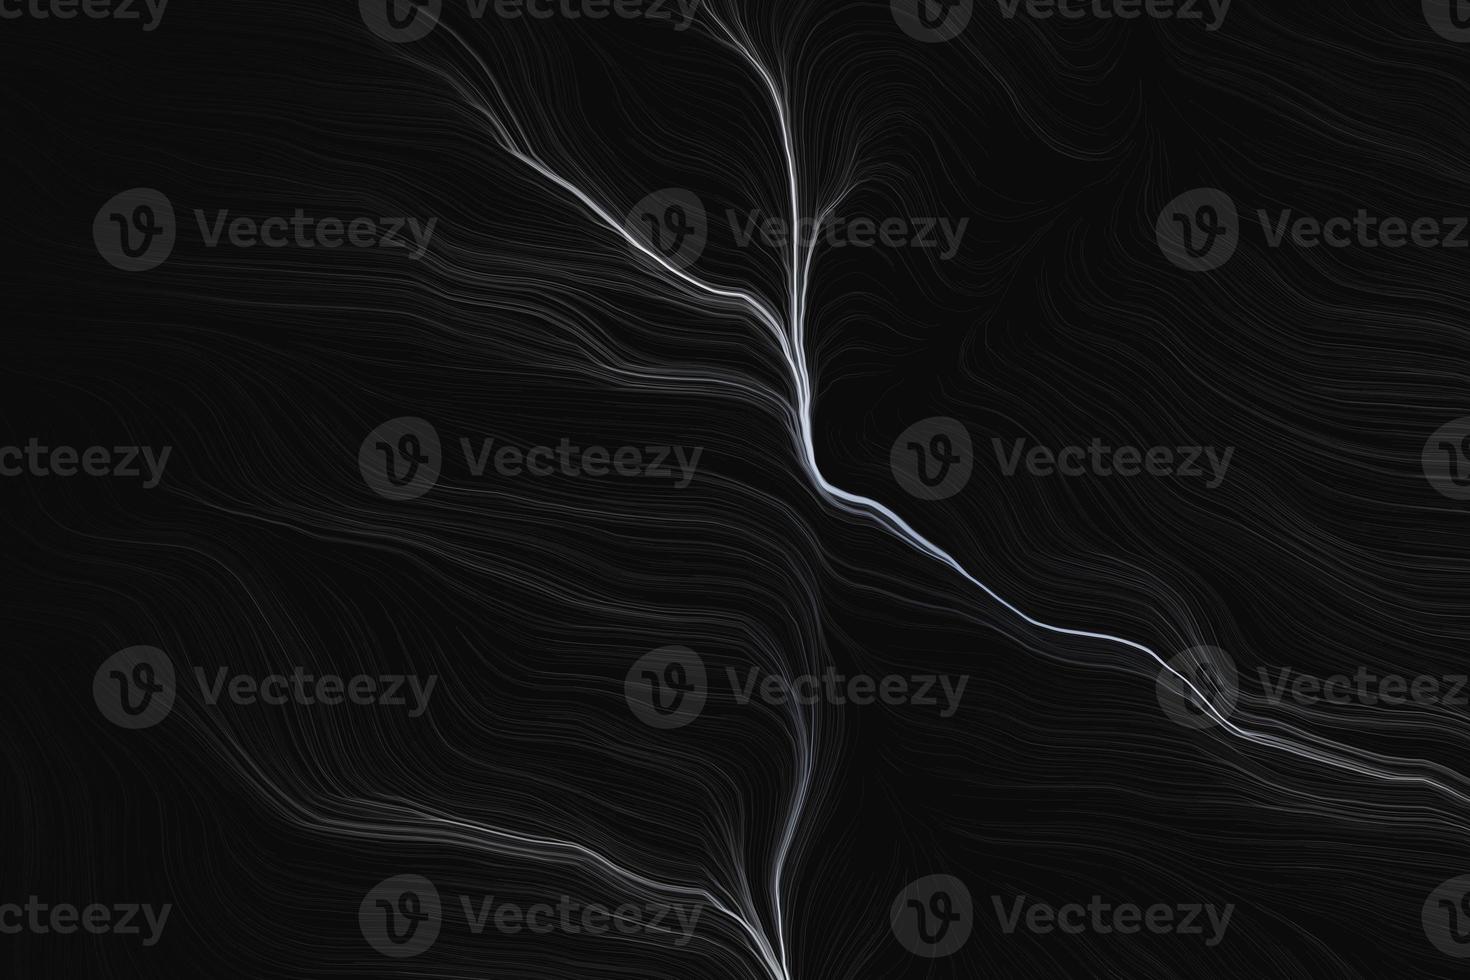 abstrakta vita partiklar flödar på svart bakgrund. futuristiska elektro linjer textur 3d rendering visualisering foto